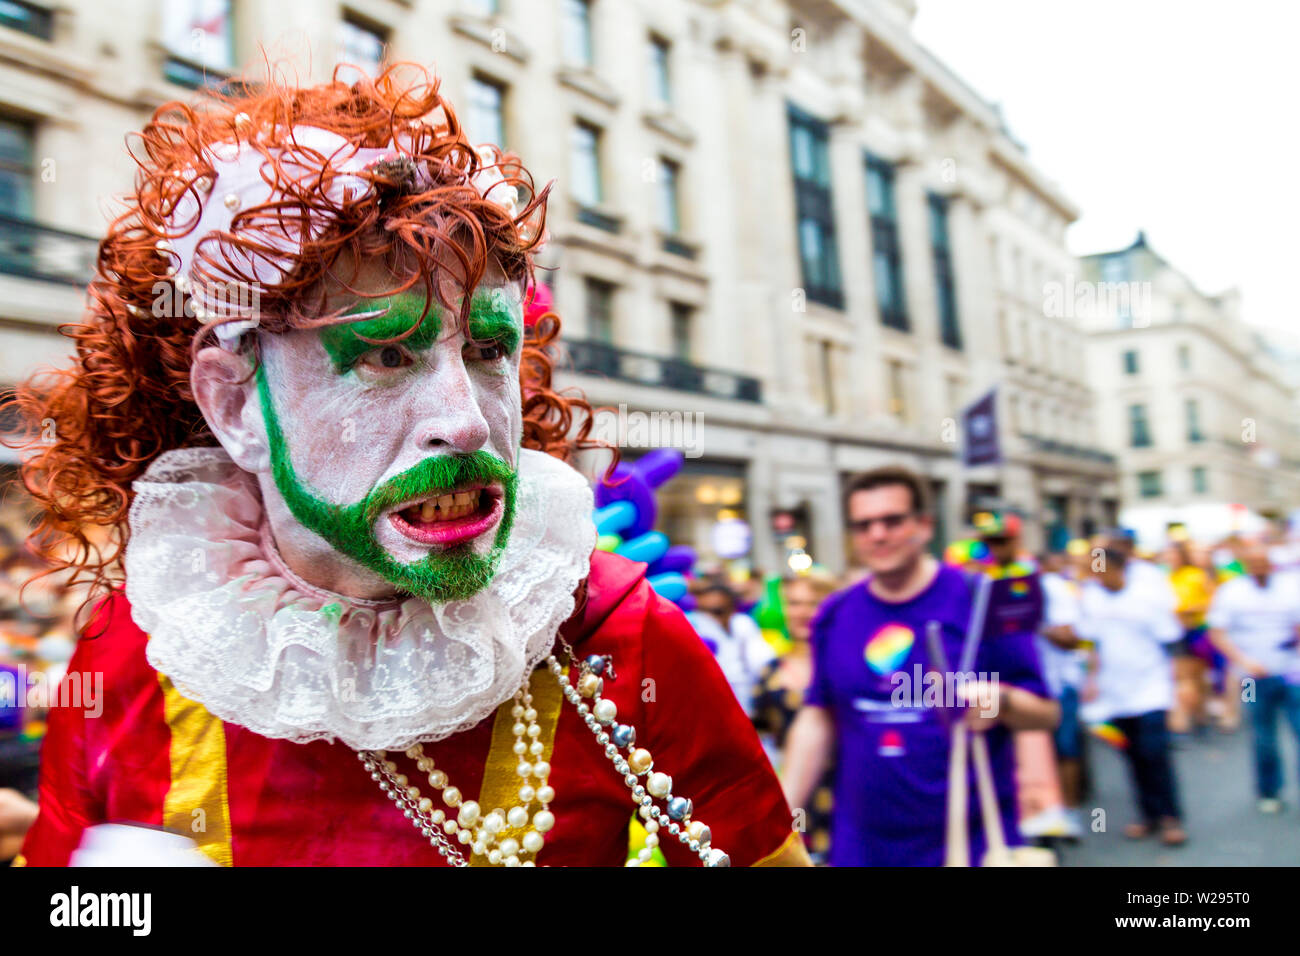 El 6 de julio de 2019 - el hombre con la cara pintada con enojo en la Marcha del orgullo gay de Londres, Reino Unido Foto de stock